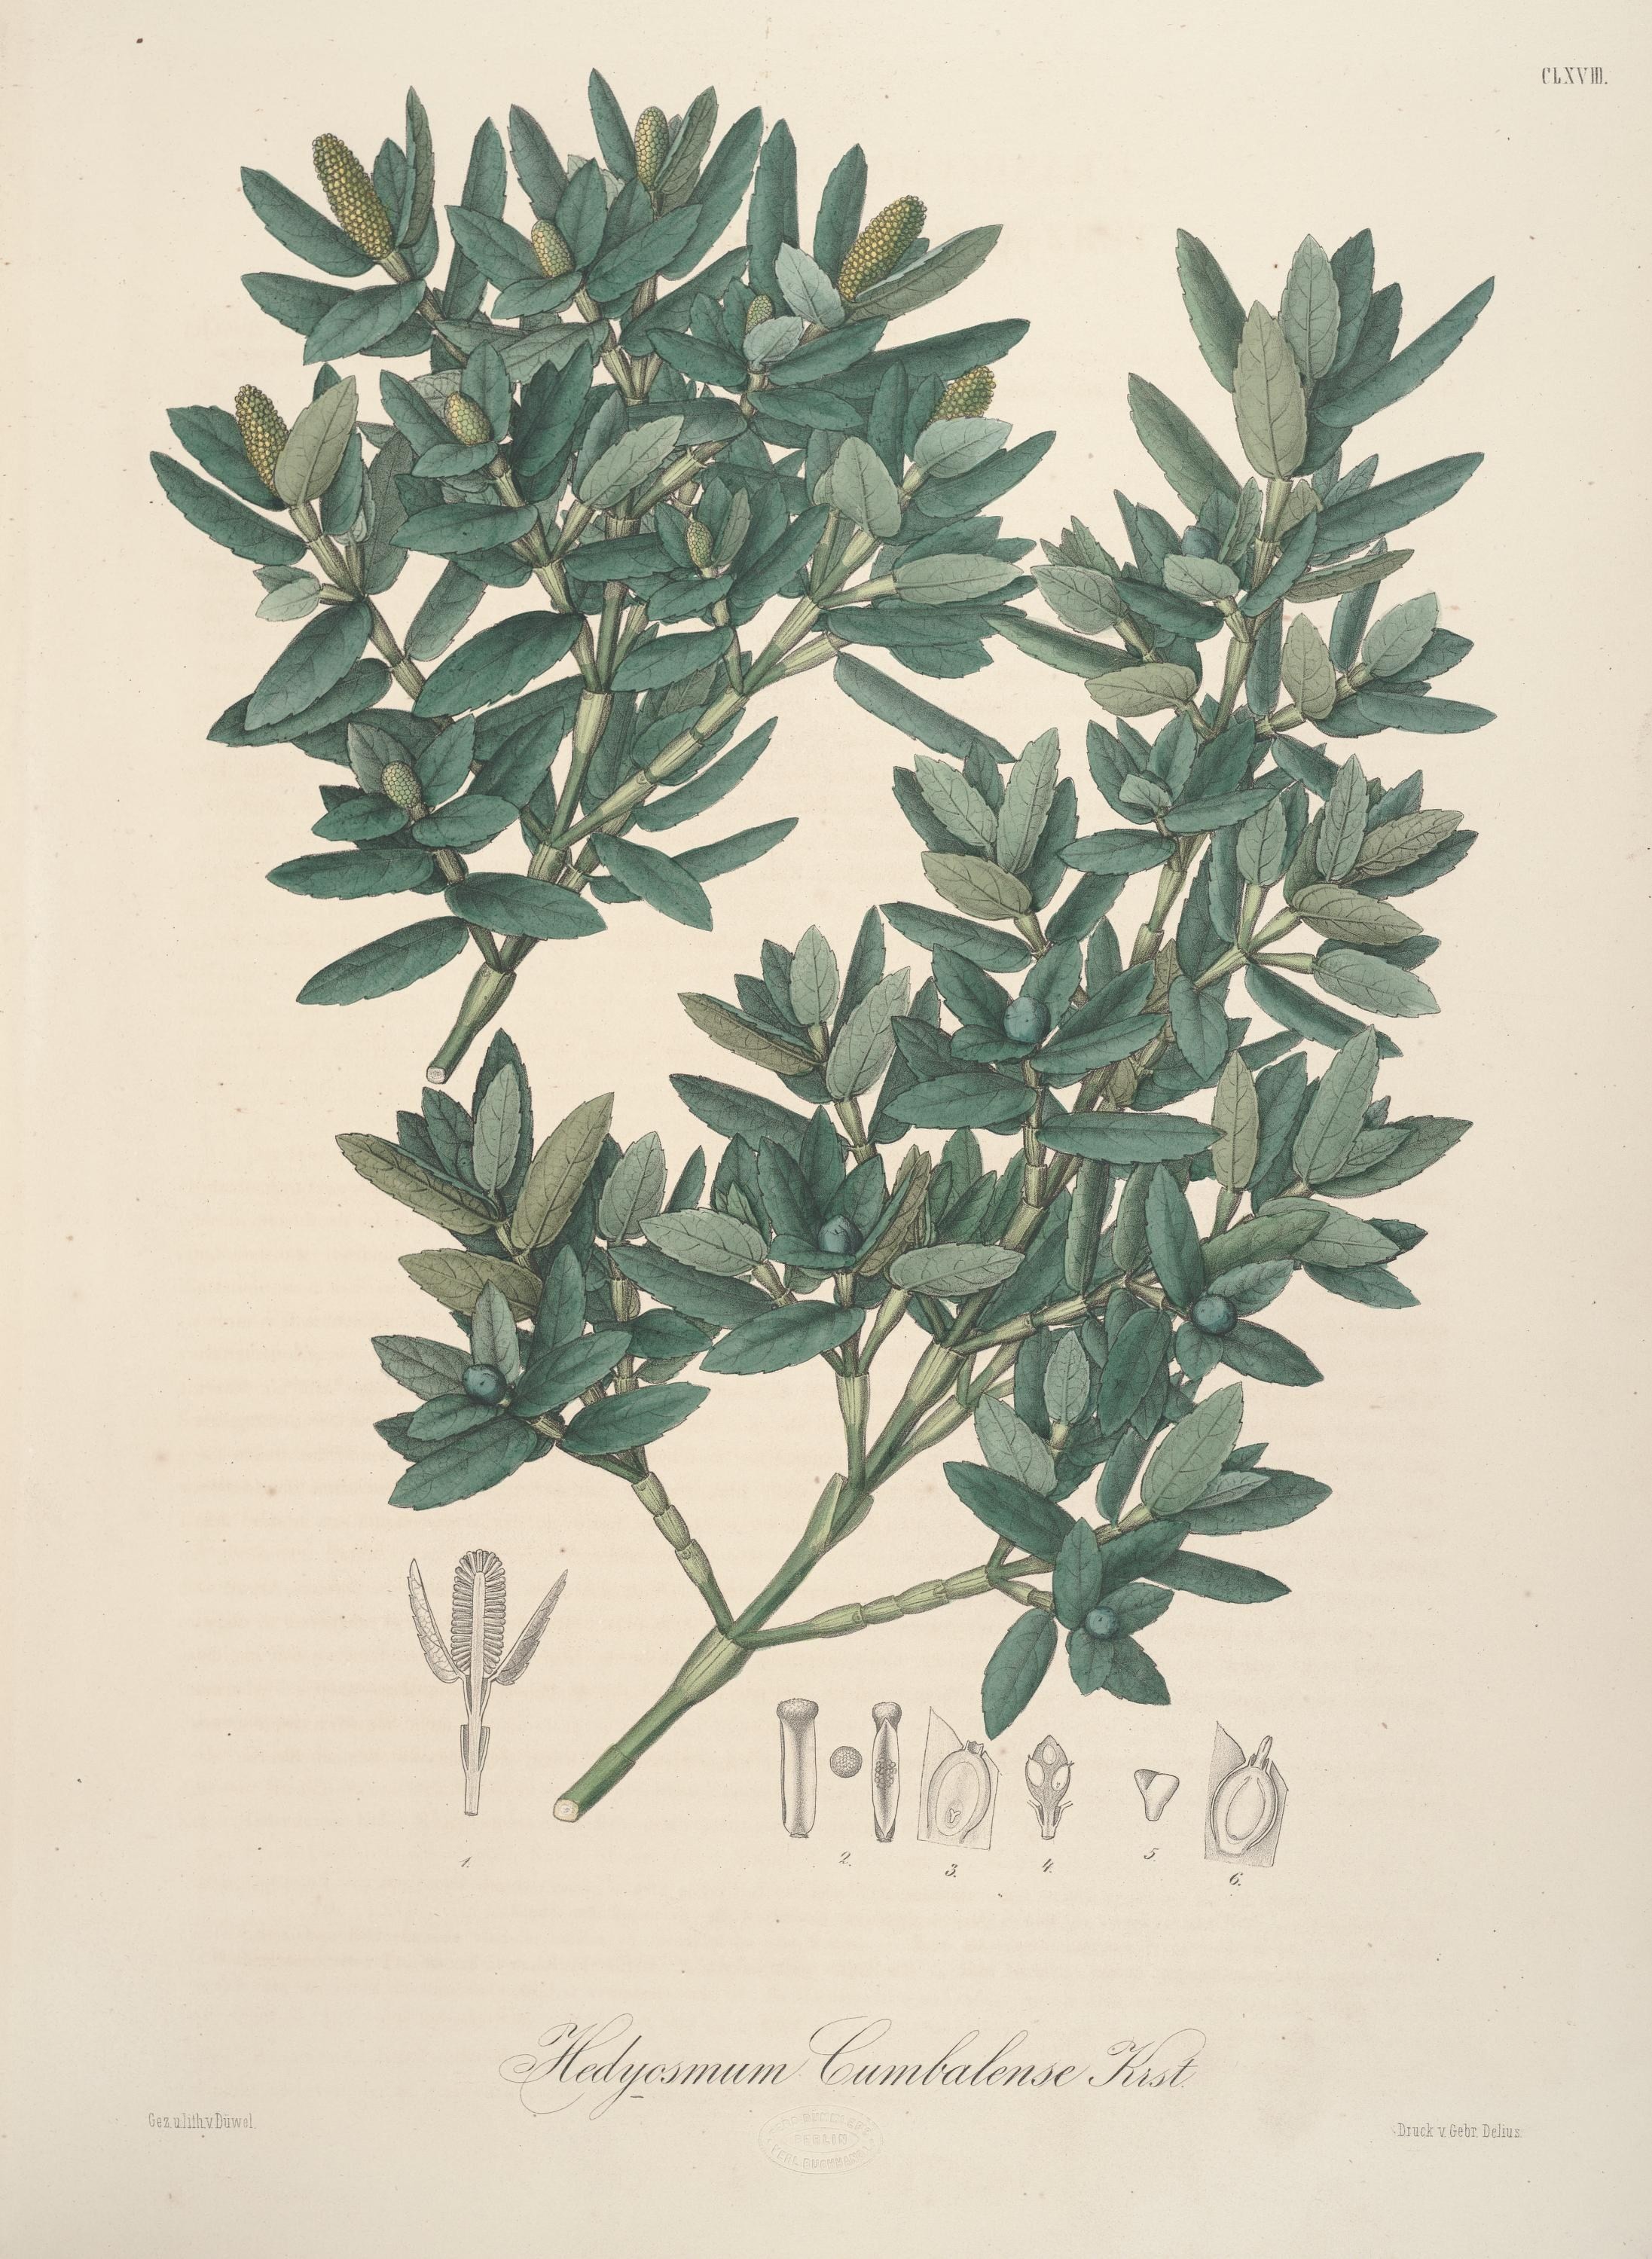 Image of hedyosmum